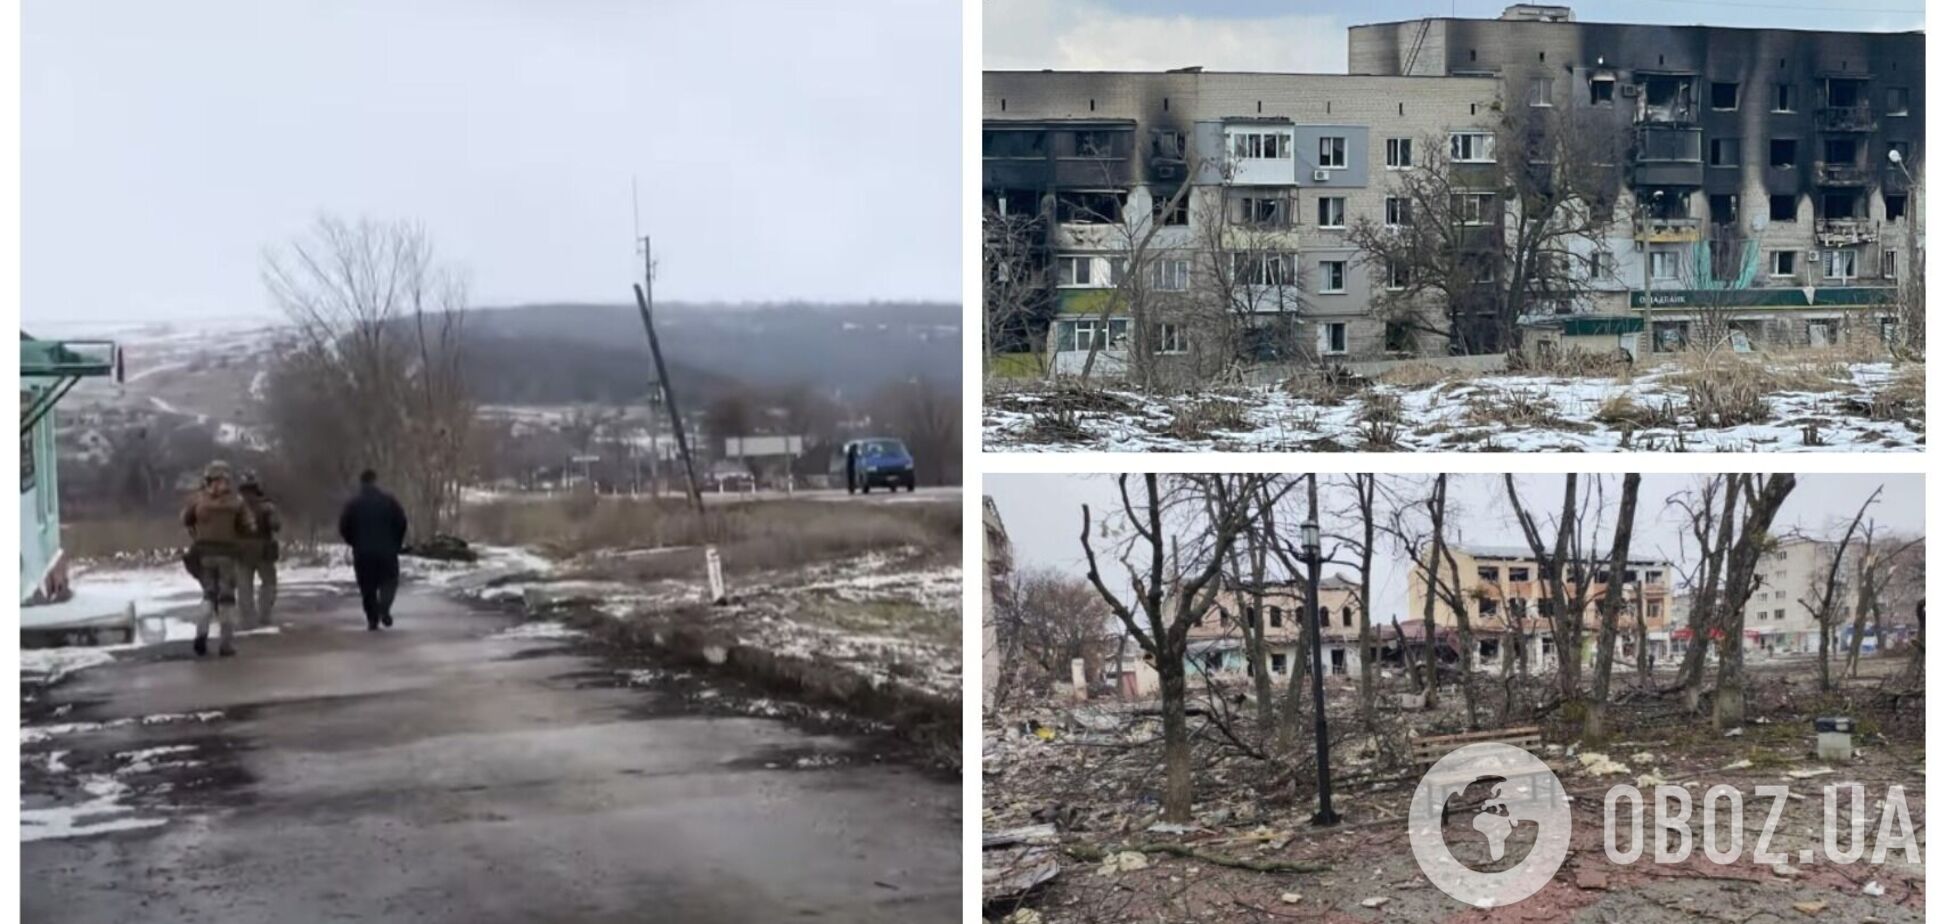 В Изюме на Харьковщине идет ожесточенный бой, не прекращаются взрывы: людей не смогли эвакуировать. Видео